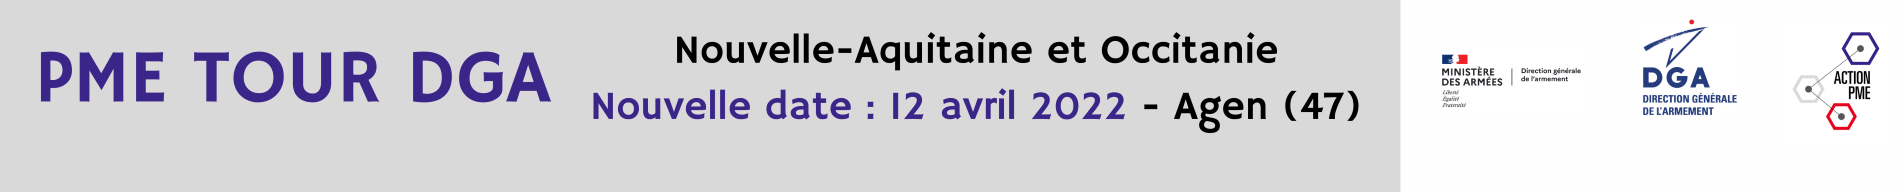 Header evenement ALPHA-RLH PME TOUR DGA en Nouvelle-Aquitaine et Occitanie